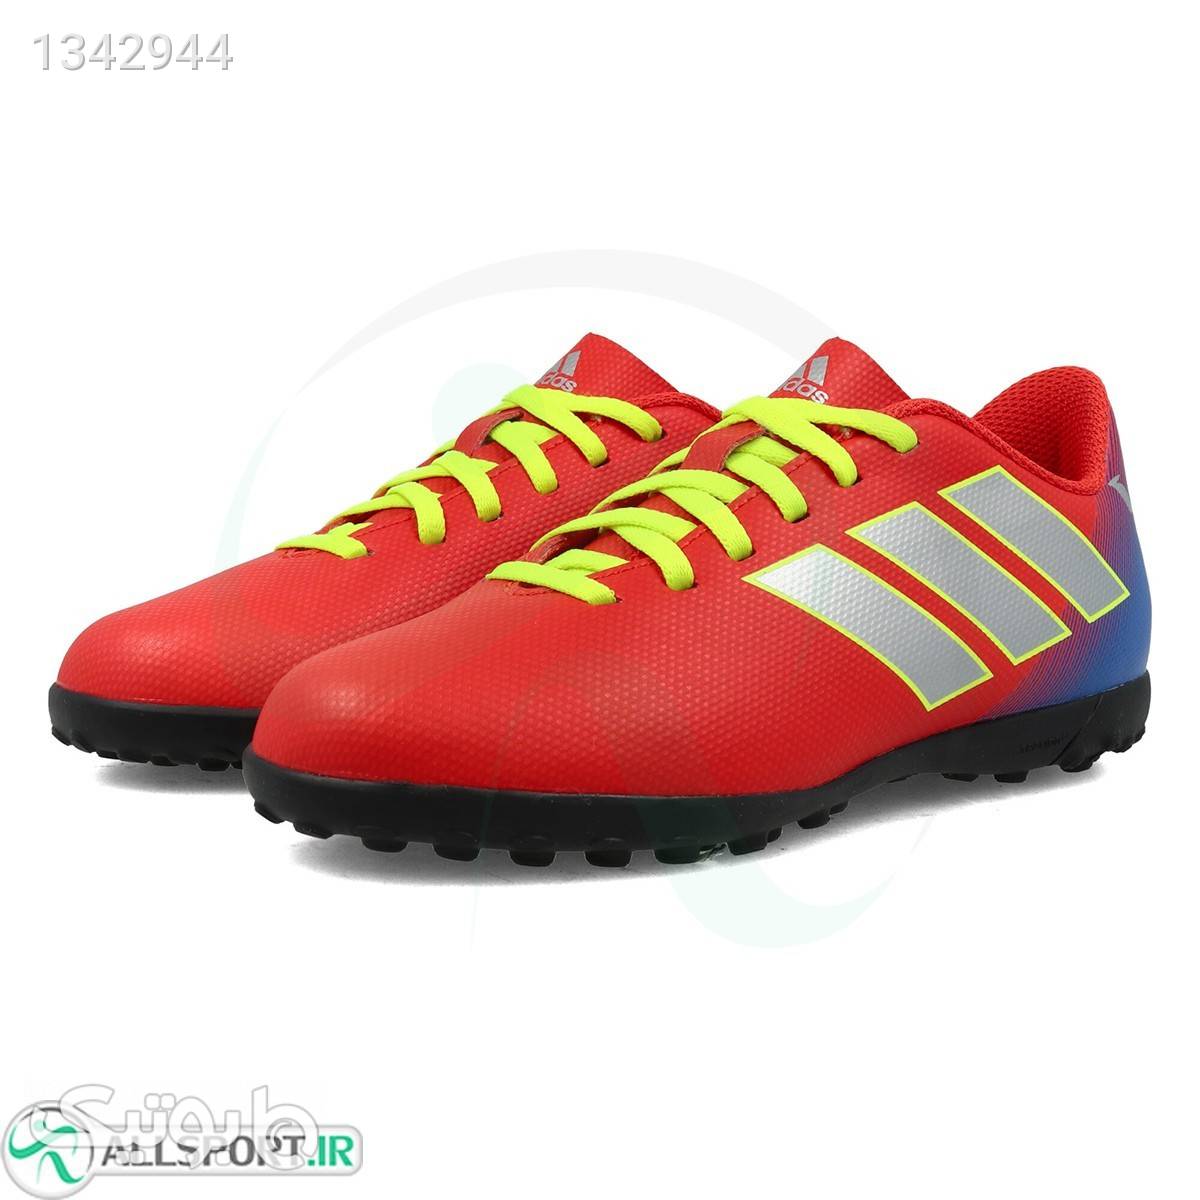 کفش چمن مصنوعی سایز کوچک آدیداس نمزیز Adidas Nemeziz Messi 18.4 Tf JR CM8642